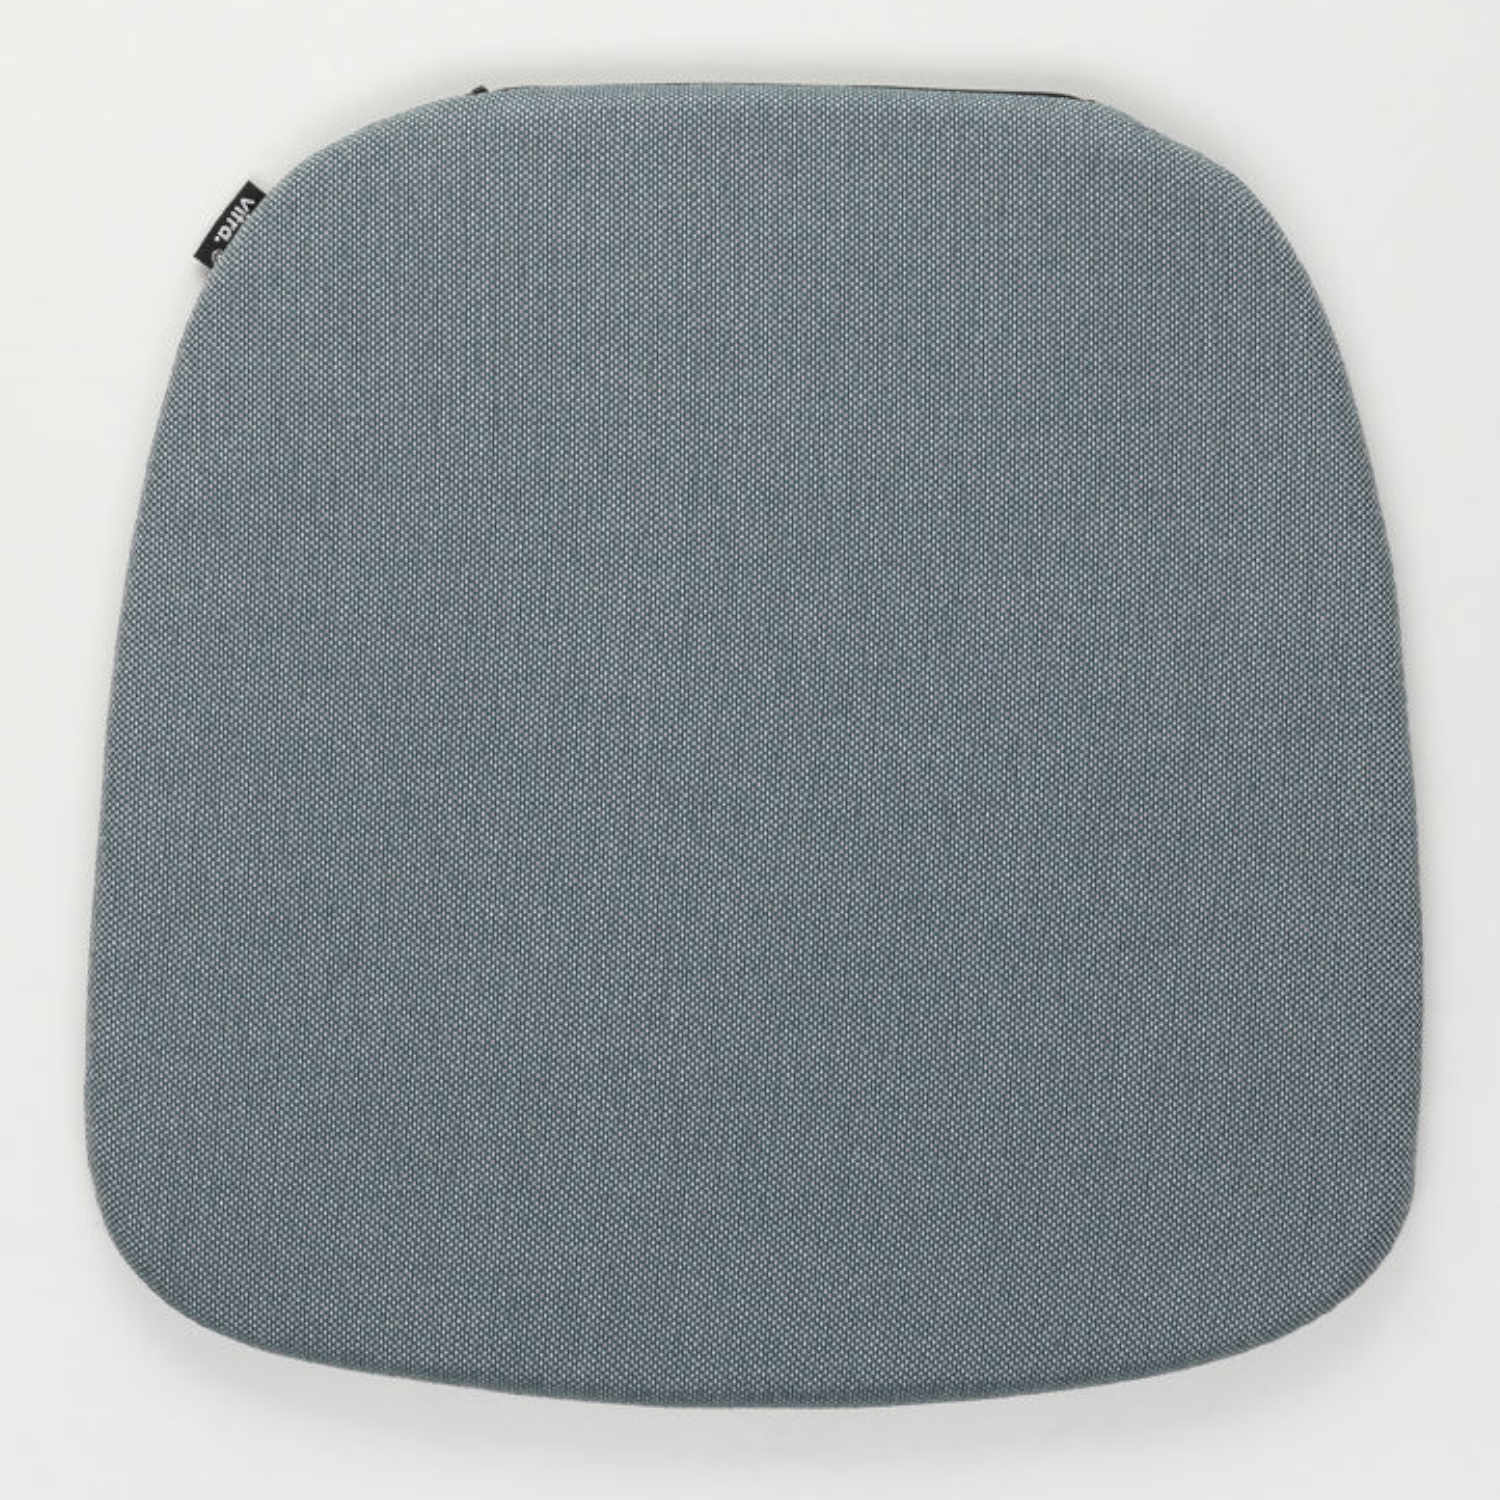 Soft Seats Type A Outdoor Sitzkissen, Bezug simmons 53 / white steel blue von Vitra